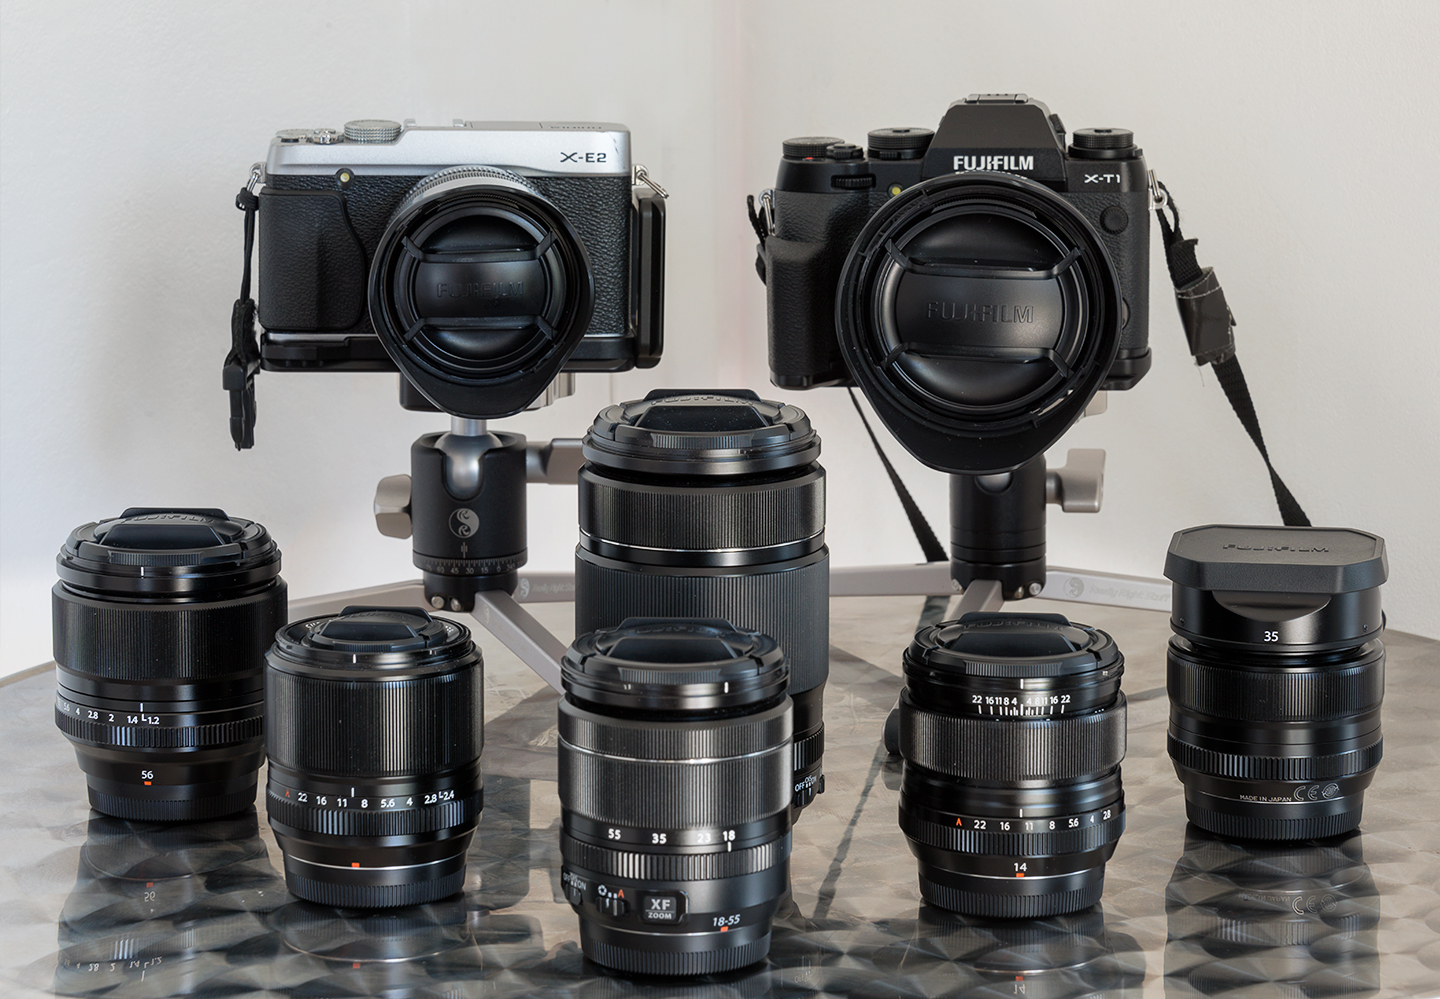 Fujifilm-Cameras-and-lenses-X-T1-E2-1440.jpg